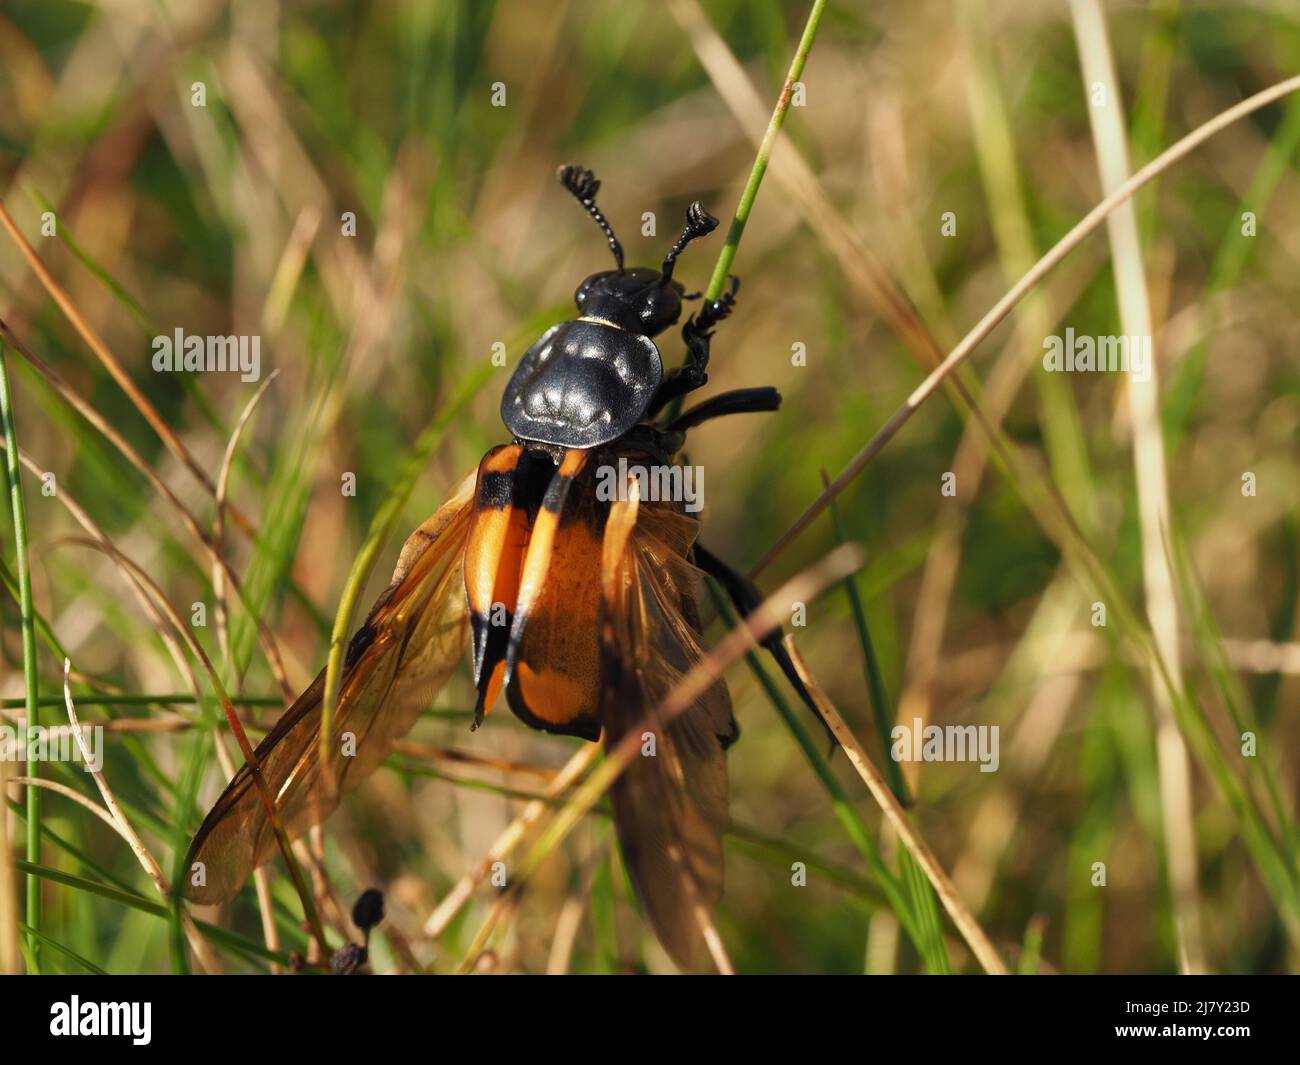 Escarabajo común del sexton (vespilloides de Nicrophorus) - alas expuestas detrás del elytra abierto (casos del ala) - receptores sensibles en las antenas Cumbria, Inglaterra, Reino Unido Foto de stock